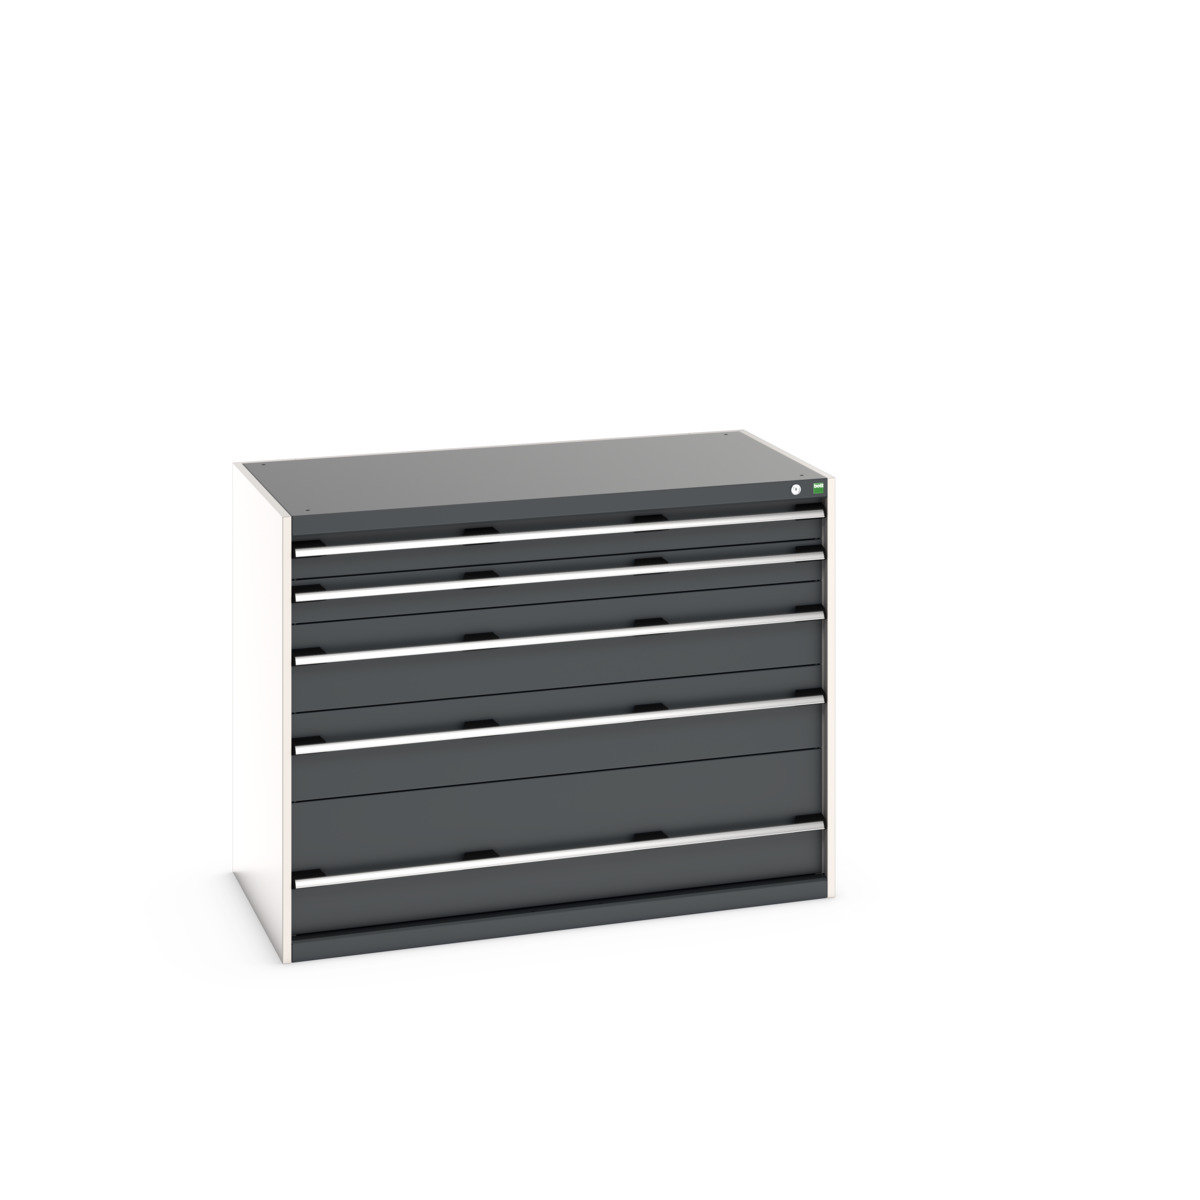 40030091.19V - cubio drawer cabinet